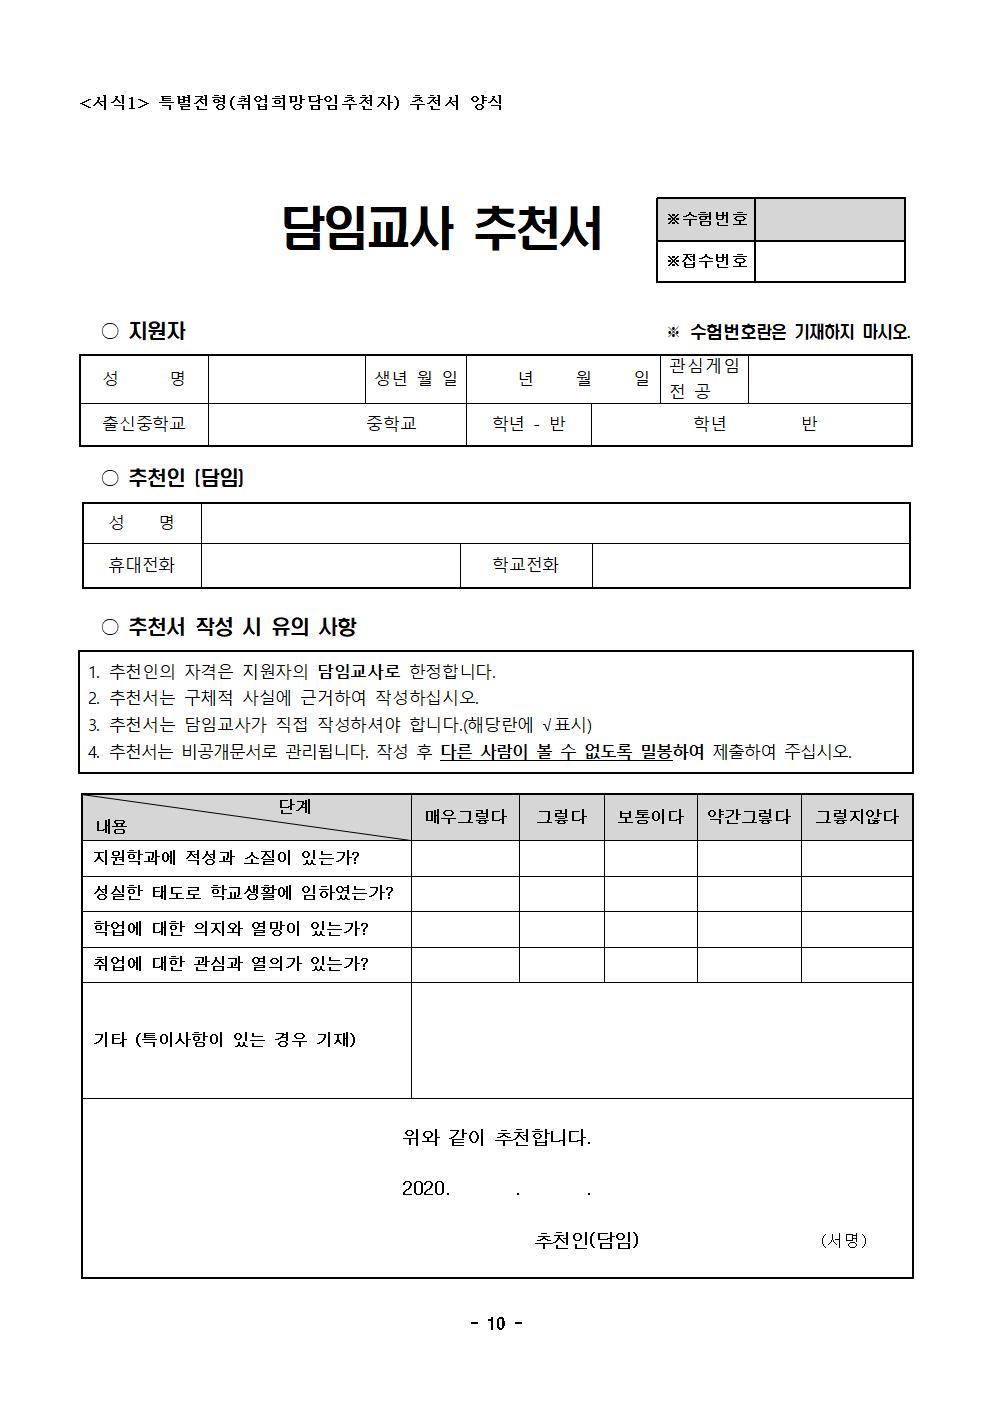 2021학년도 한국게임과학고등학교 신입생 입학 전형요강(최종승인본)010